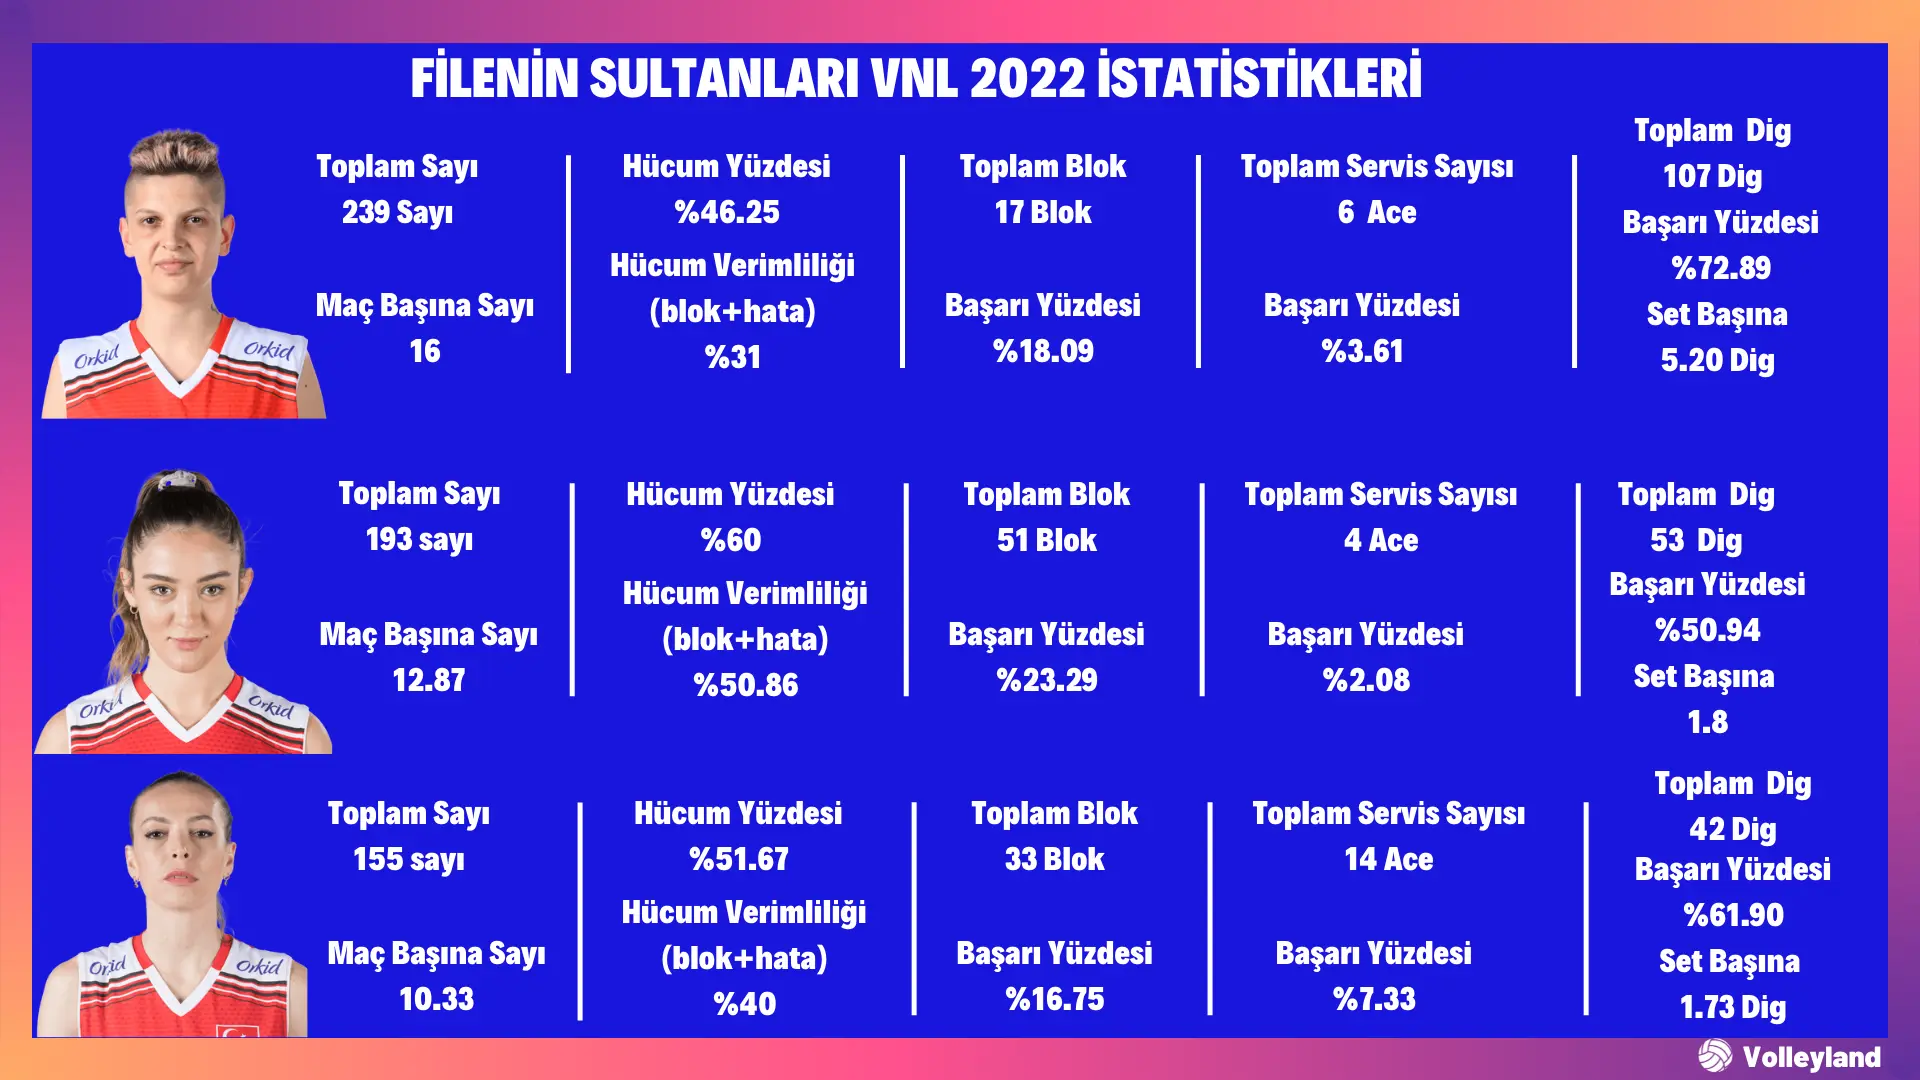 Filenin Sultanları Vnl 2022 istatistikleri